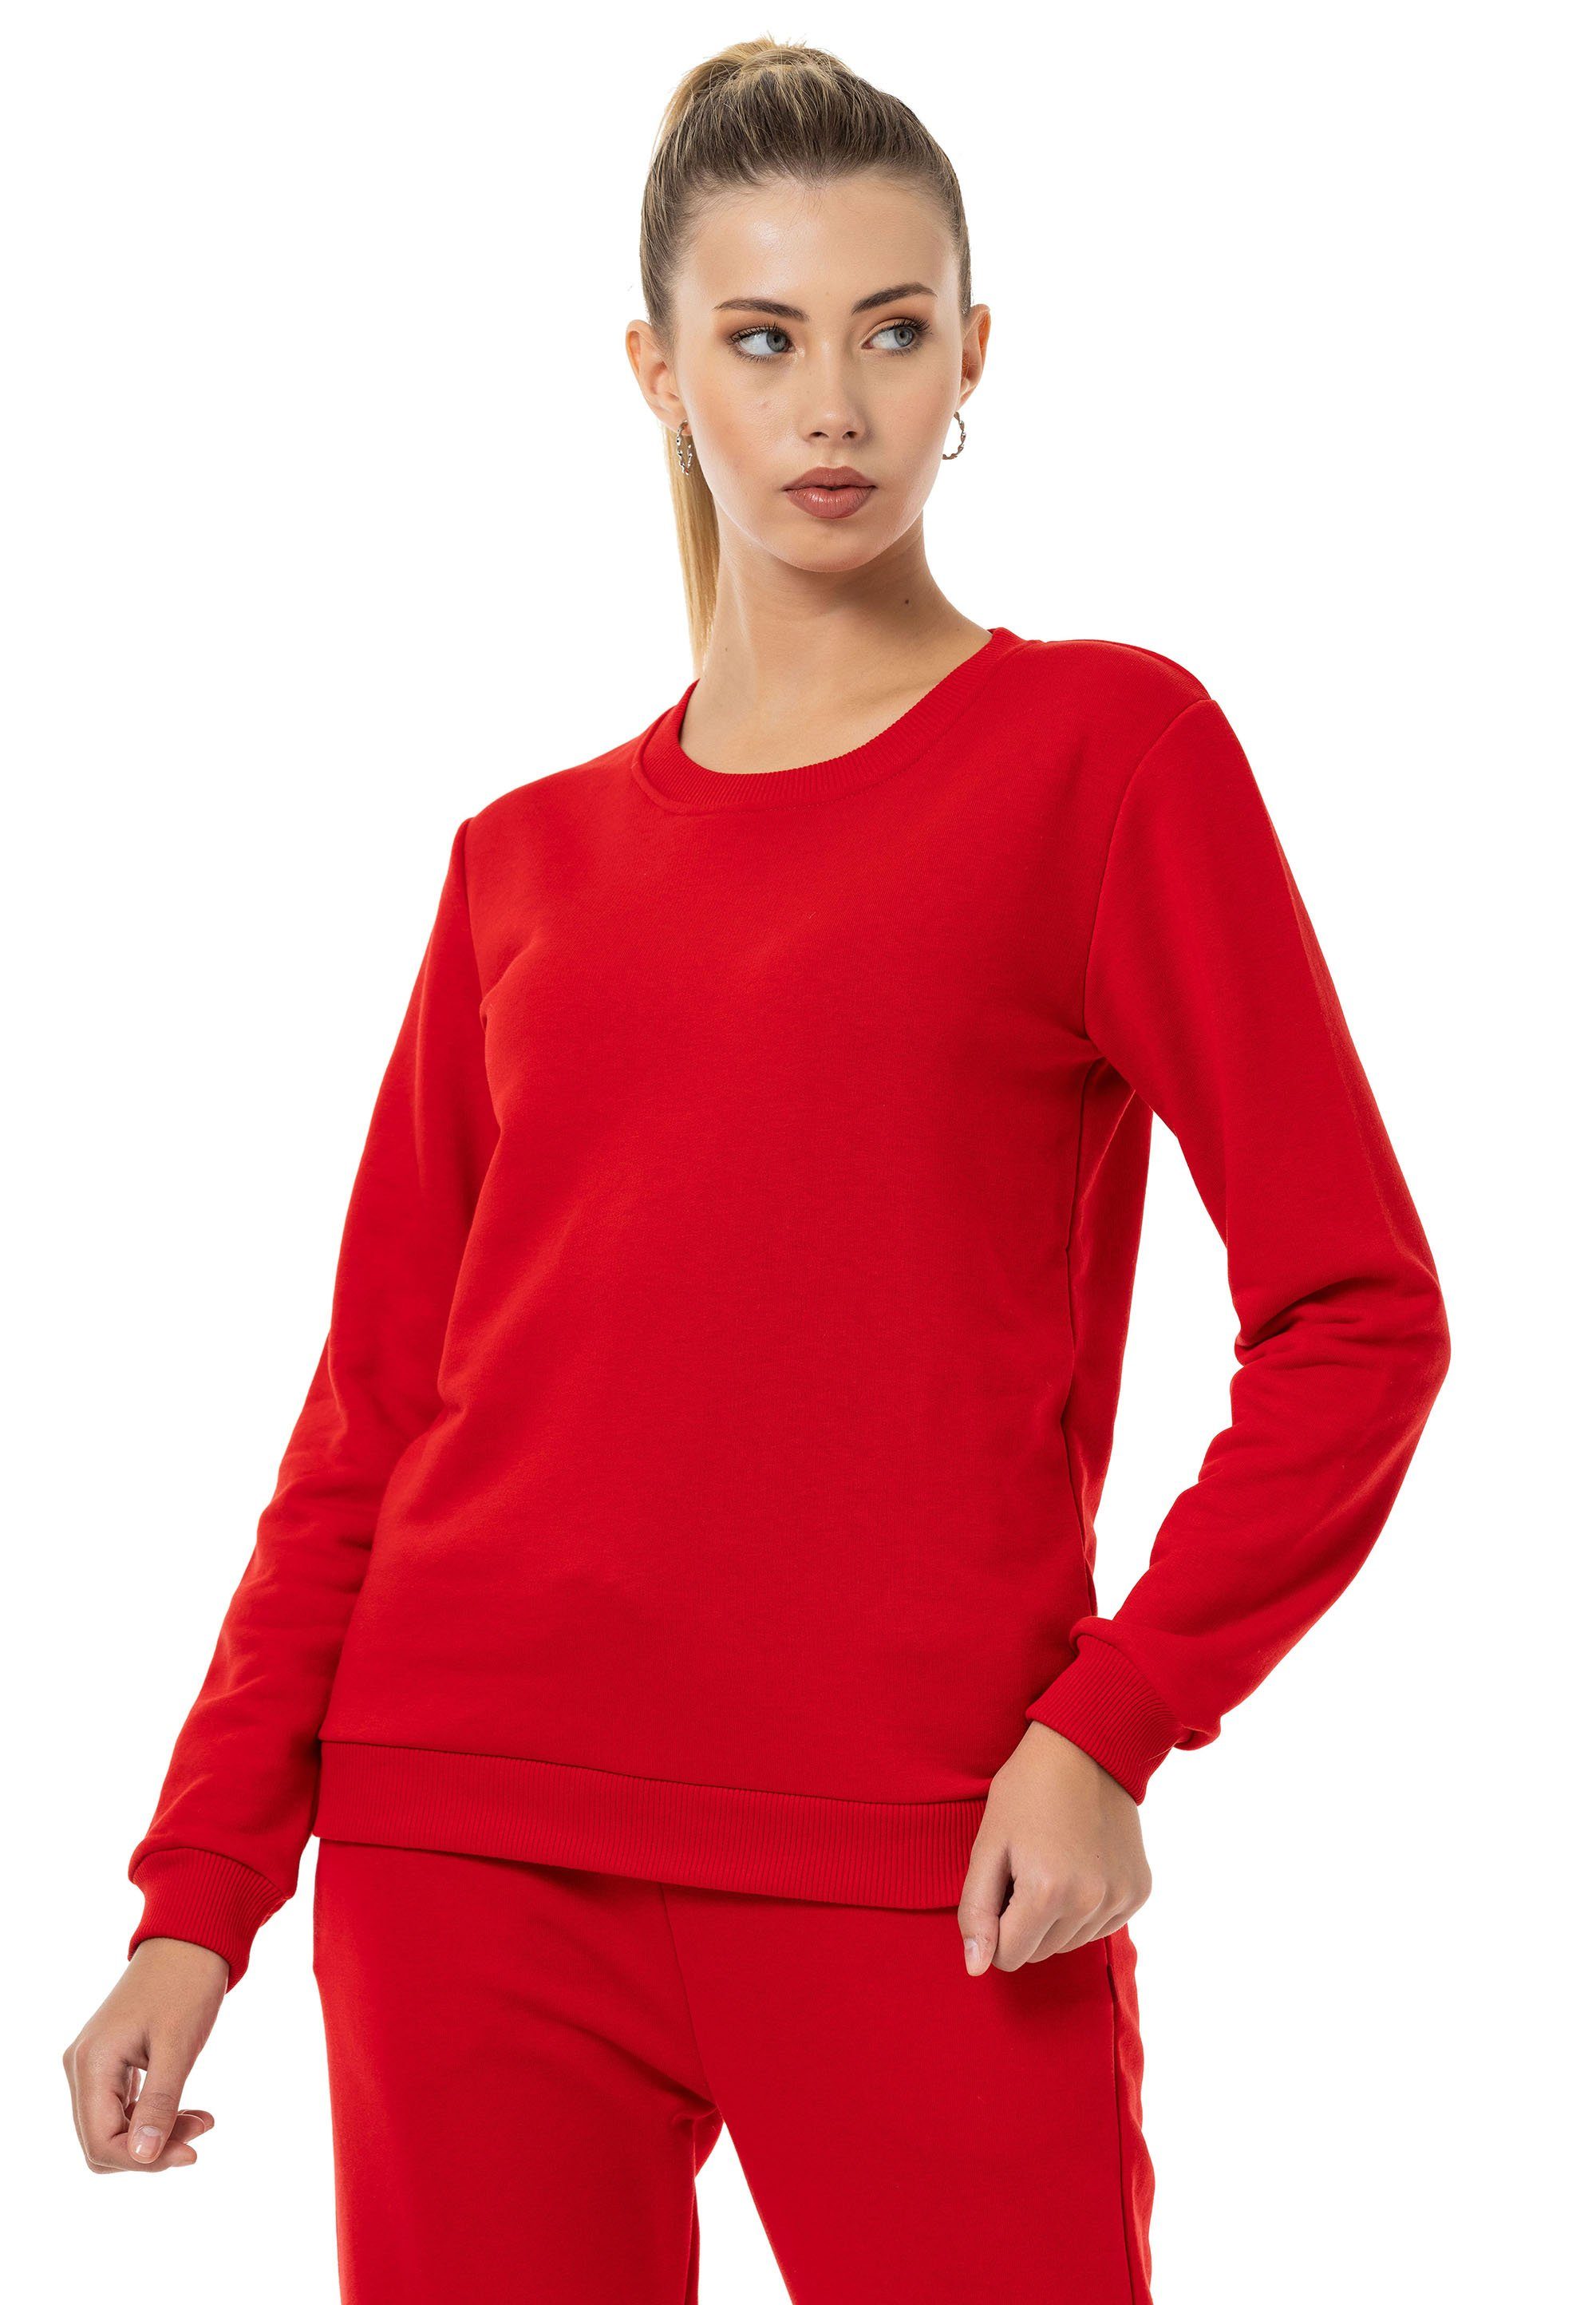 RedBridge Sweatshirt Rundhals Pullover Premium Qualität Rot